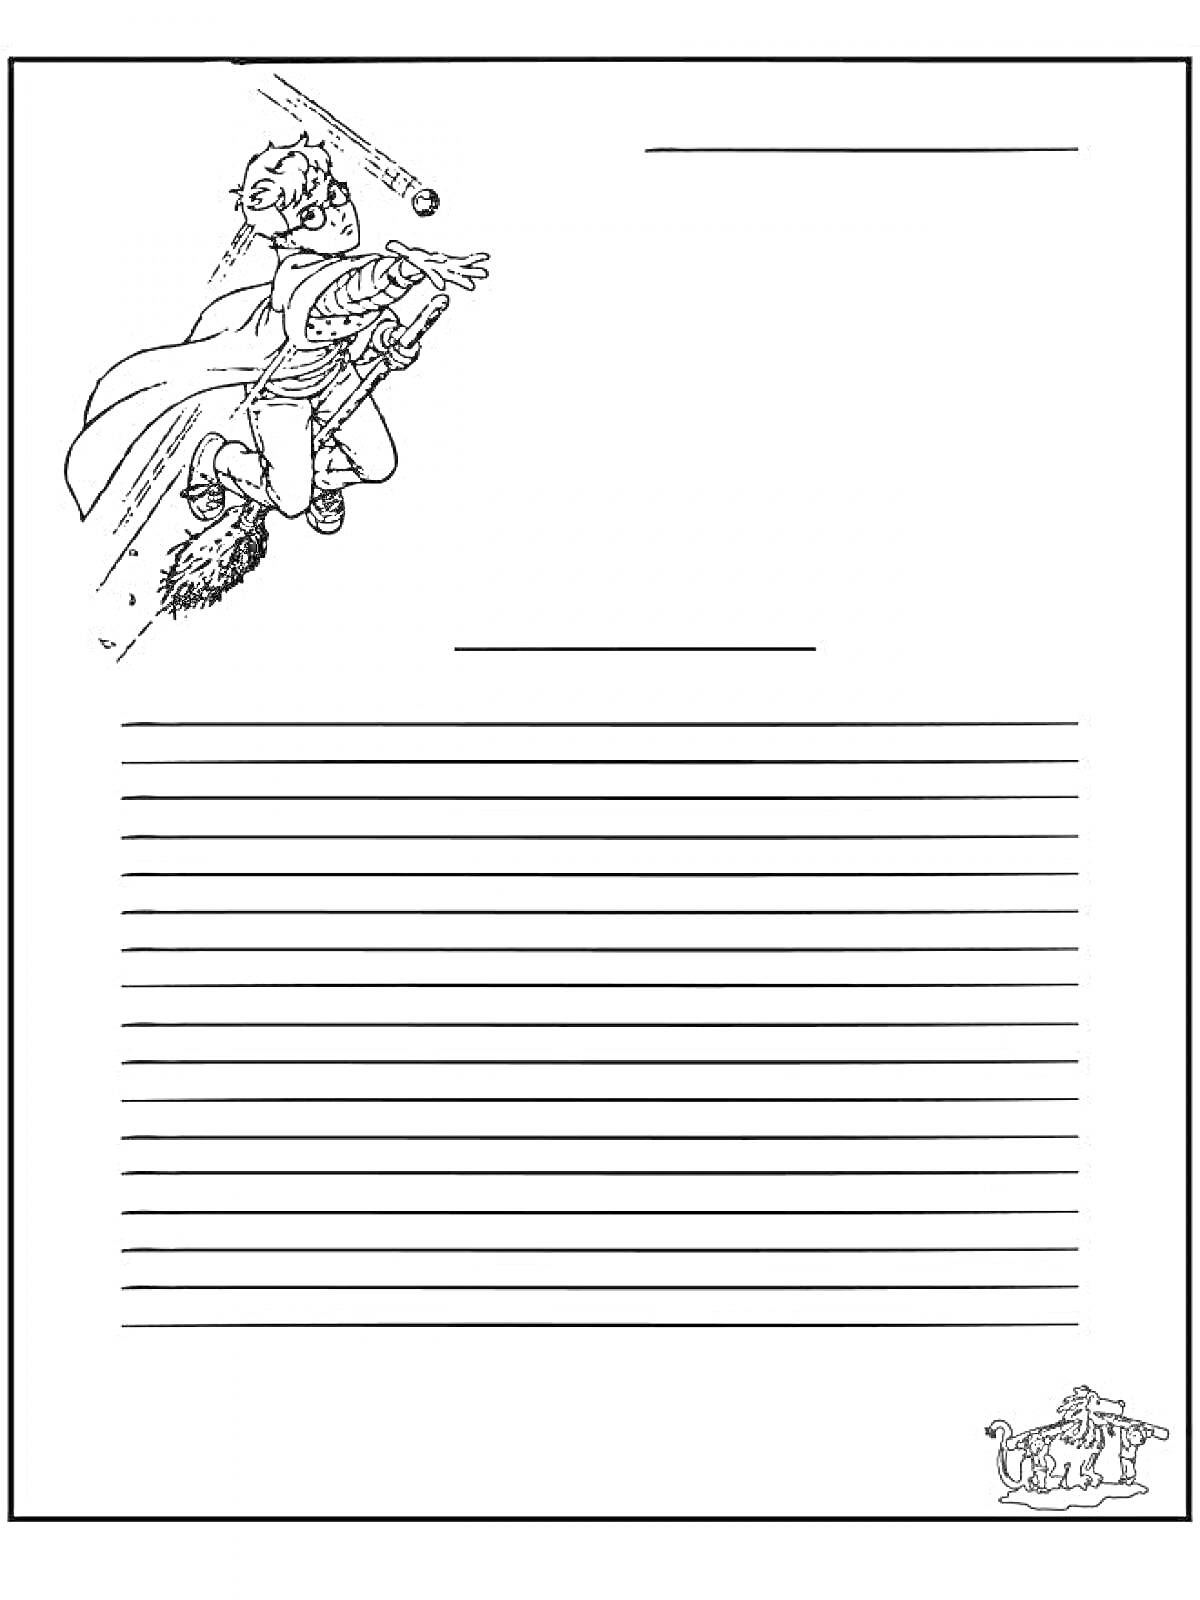 Лист для письма солдату с изображением летящего мальчика на метле и мяча, а также винтажной печатной машинки